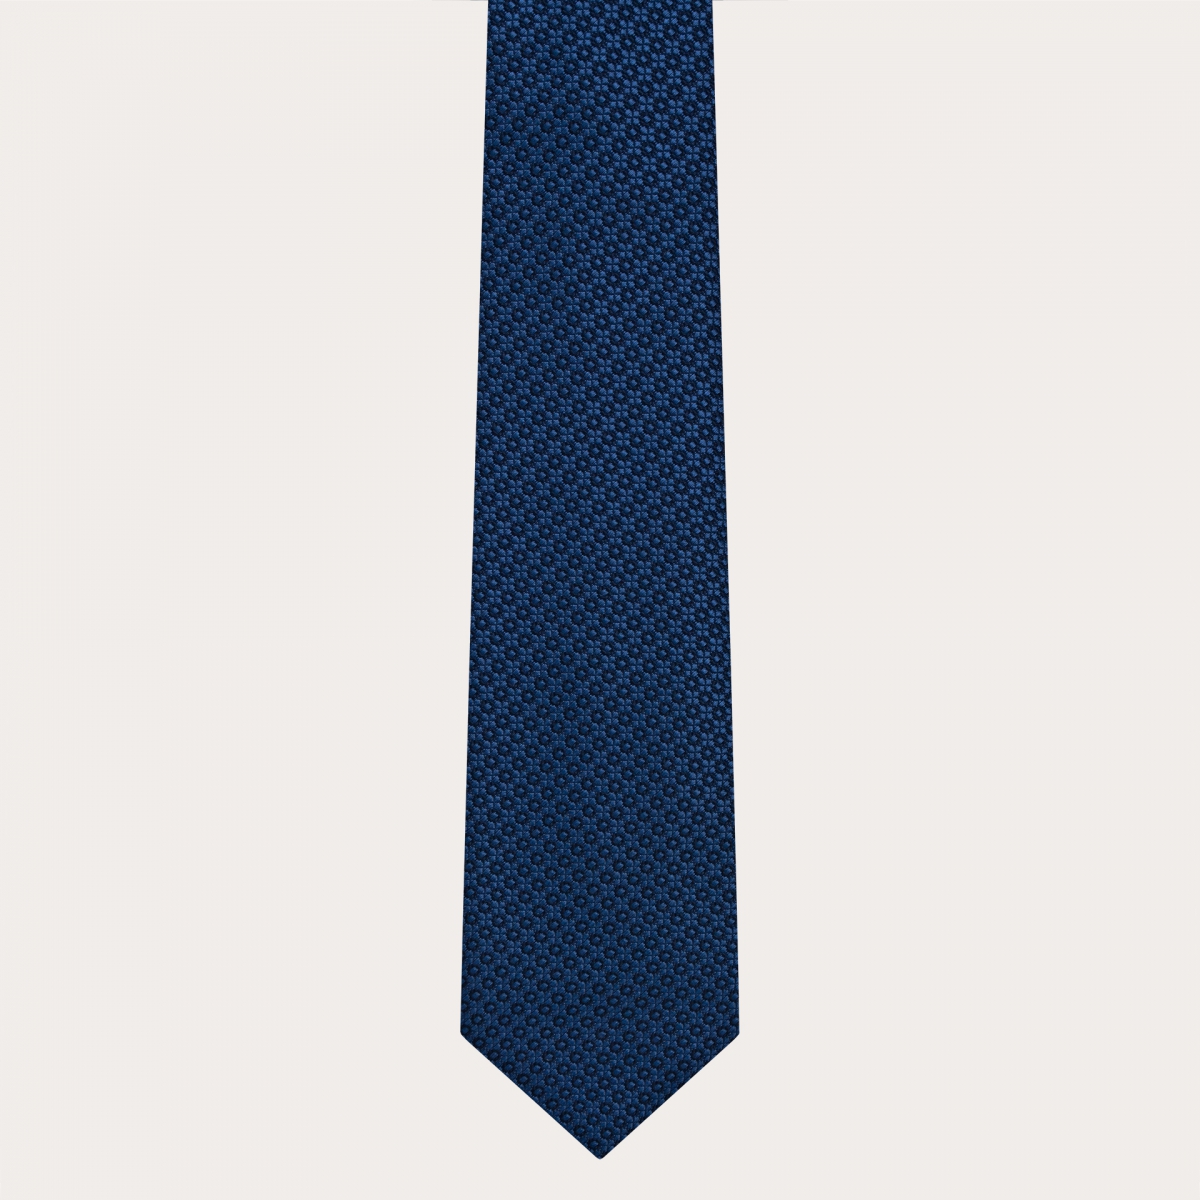 Cravatta in seta jacquard, blu con motivo a fiori tono su tono